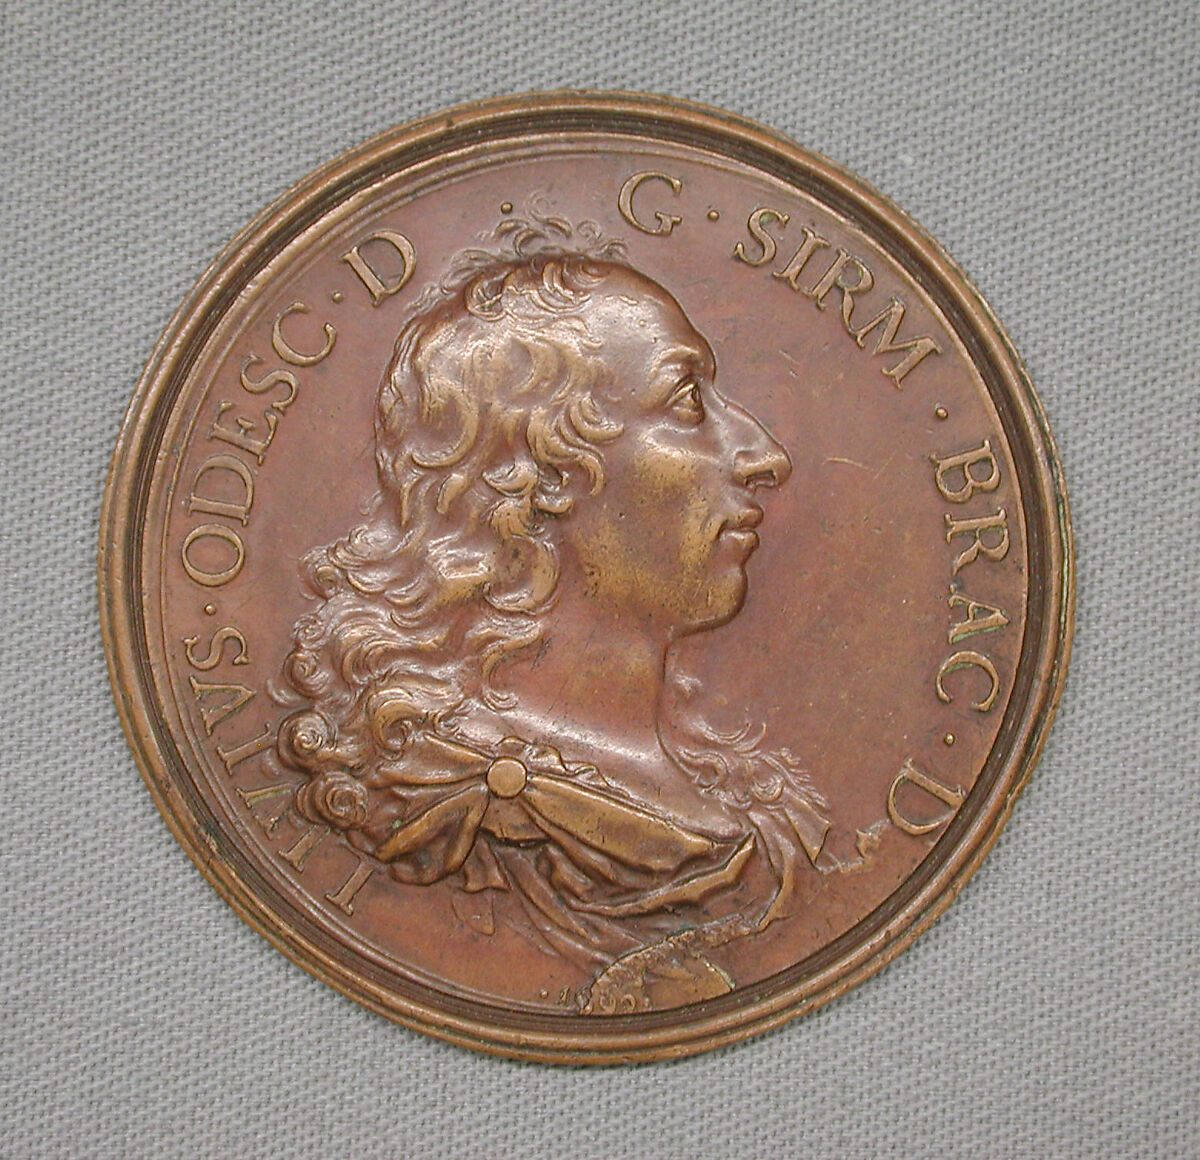 In honor of Livio Odescalchi (1652–1713), nephew of Pope Innocent XI, Medalist: possibly Giovanni Martino Hamerani (Italian, 1646/9–1705), Bronze, Italian 